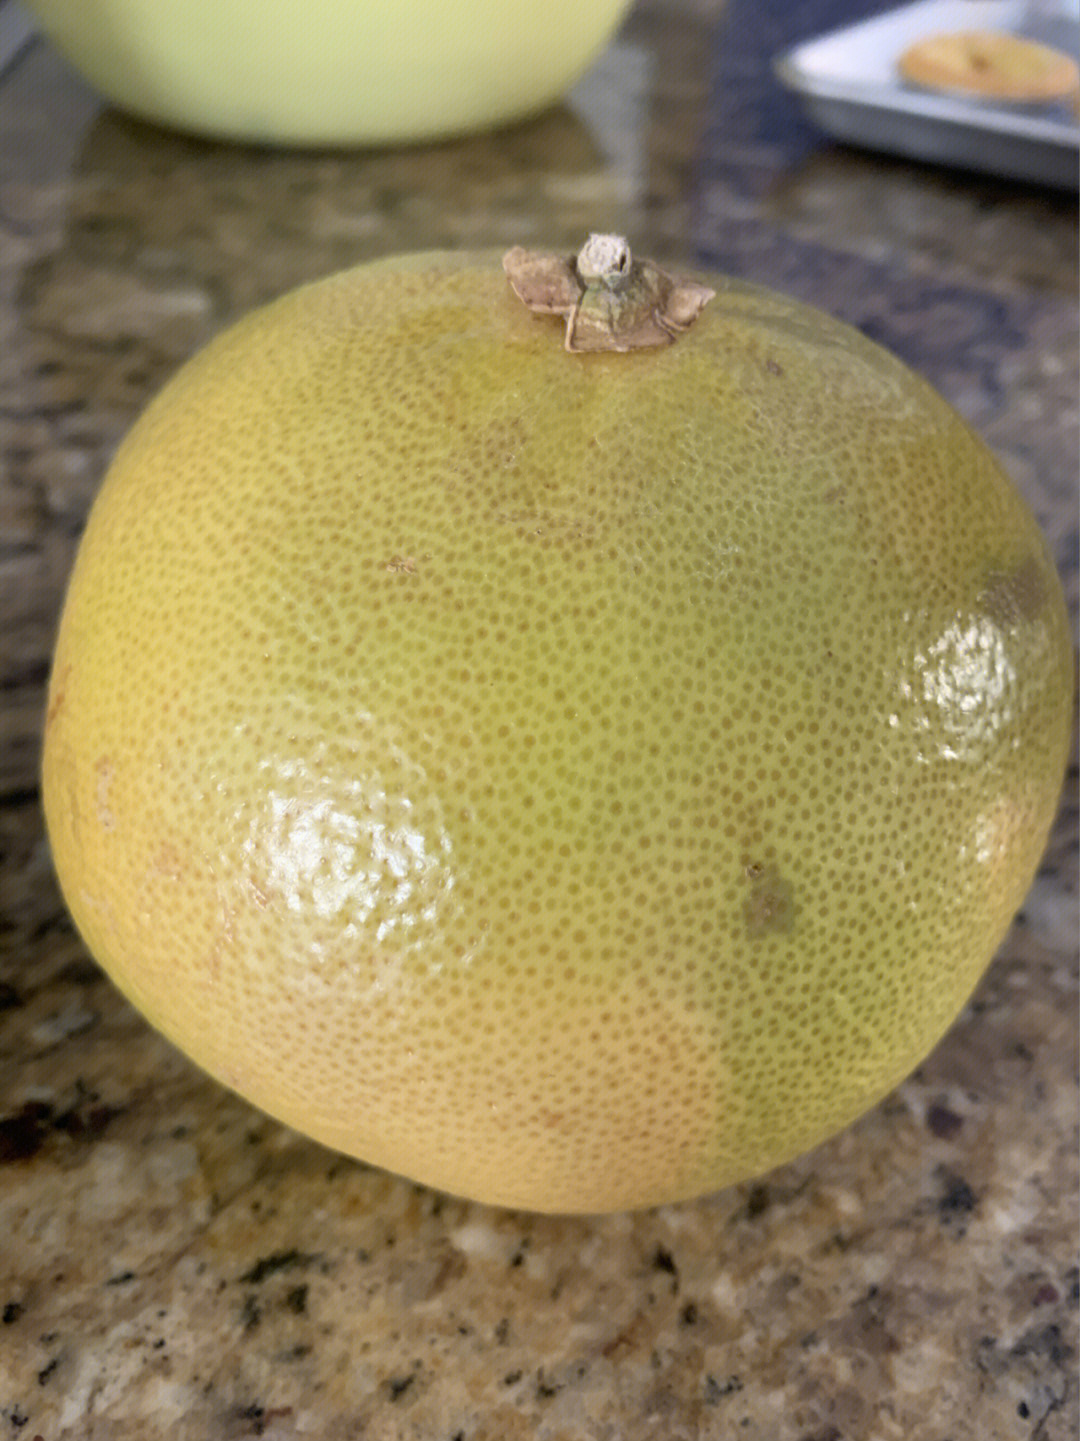 昨天去fremont的大华发现店里有两种柚子写的都是"白肉柚.一种是$0.